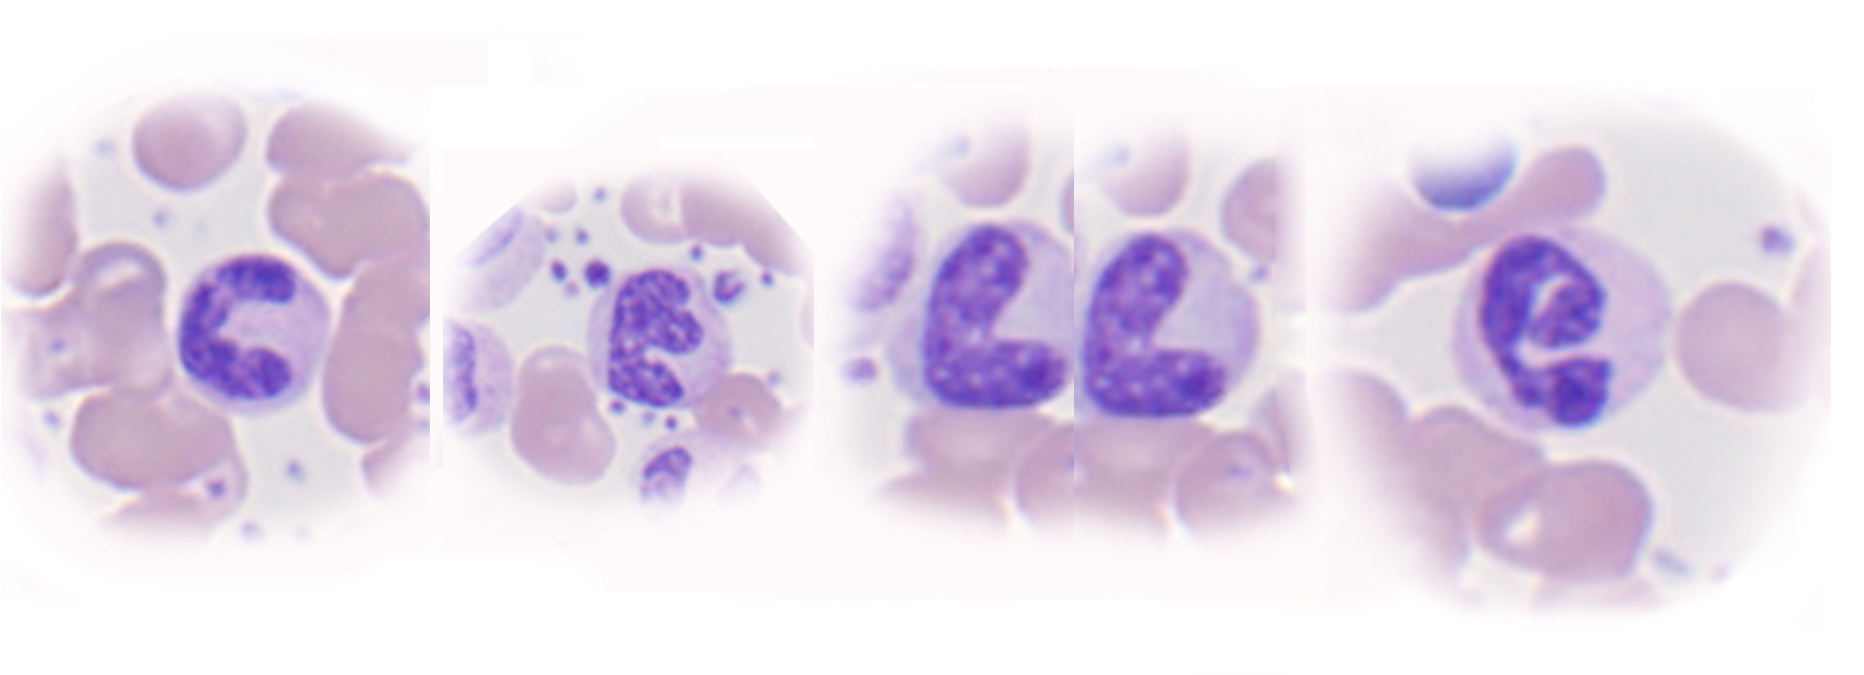 Cellekjerner som ser ut som bokstaver